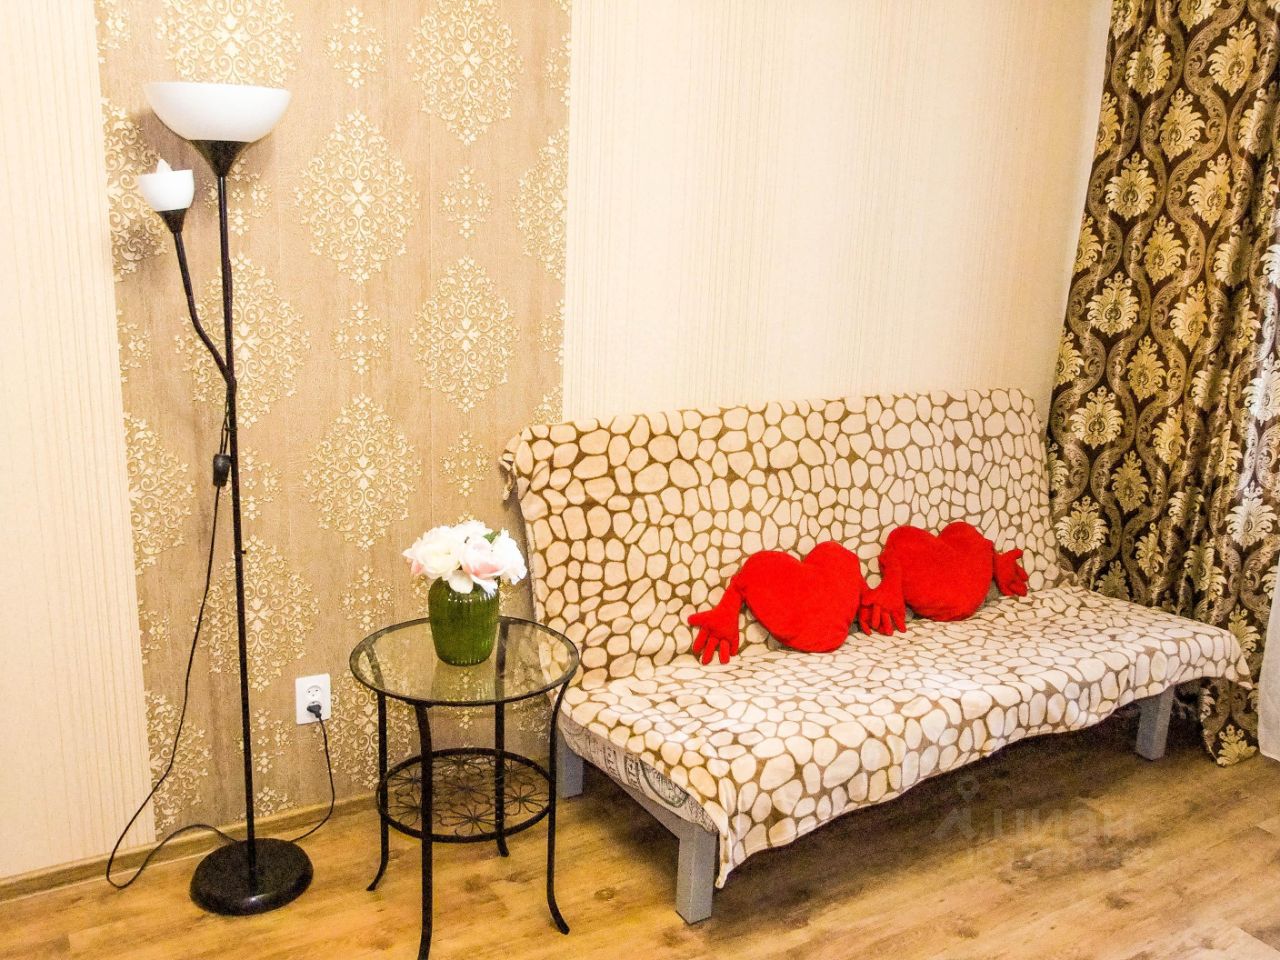 Уютная квартира в Липецке, посуточная аренда. Светлая гостиная с декоративными элементами, диван, торшер и столик. Идеально для отдыха.